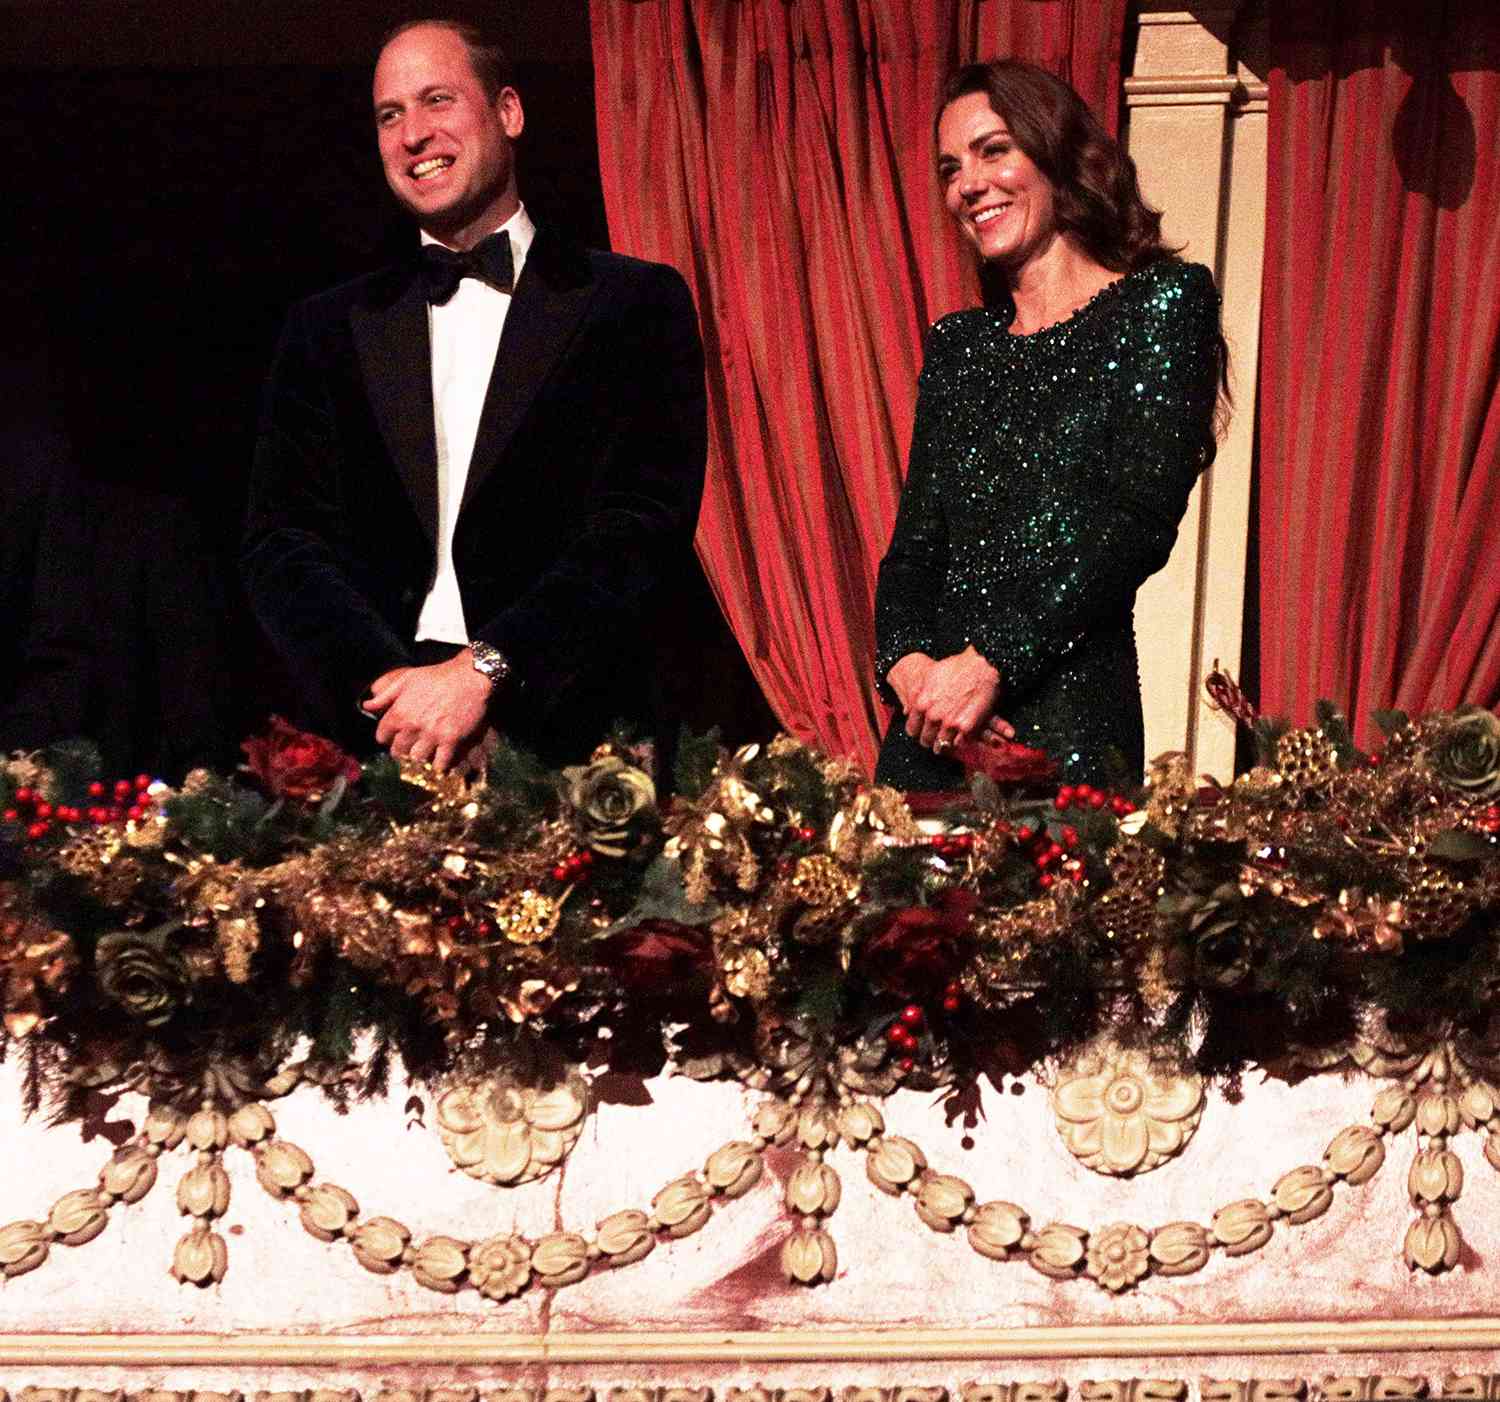 ウィリアム王子とケイトミドルトンが日曜日のロイヤルバラエティーパフォーマンス放送に先んじて輝きと笑顔